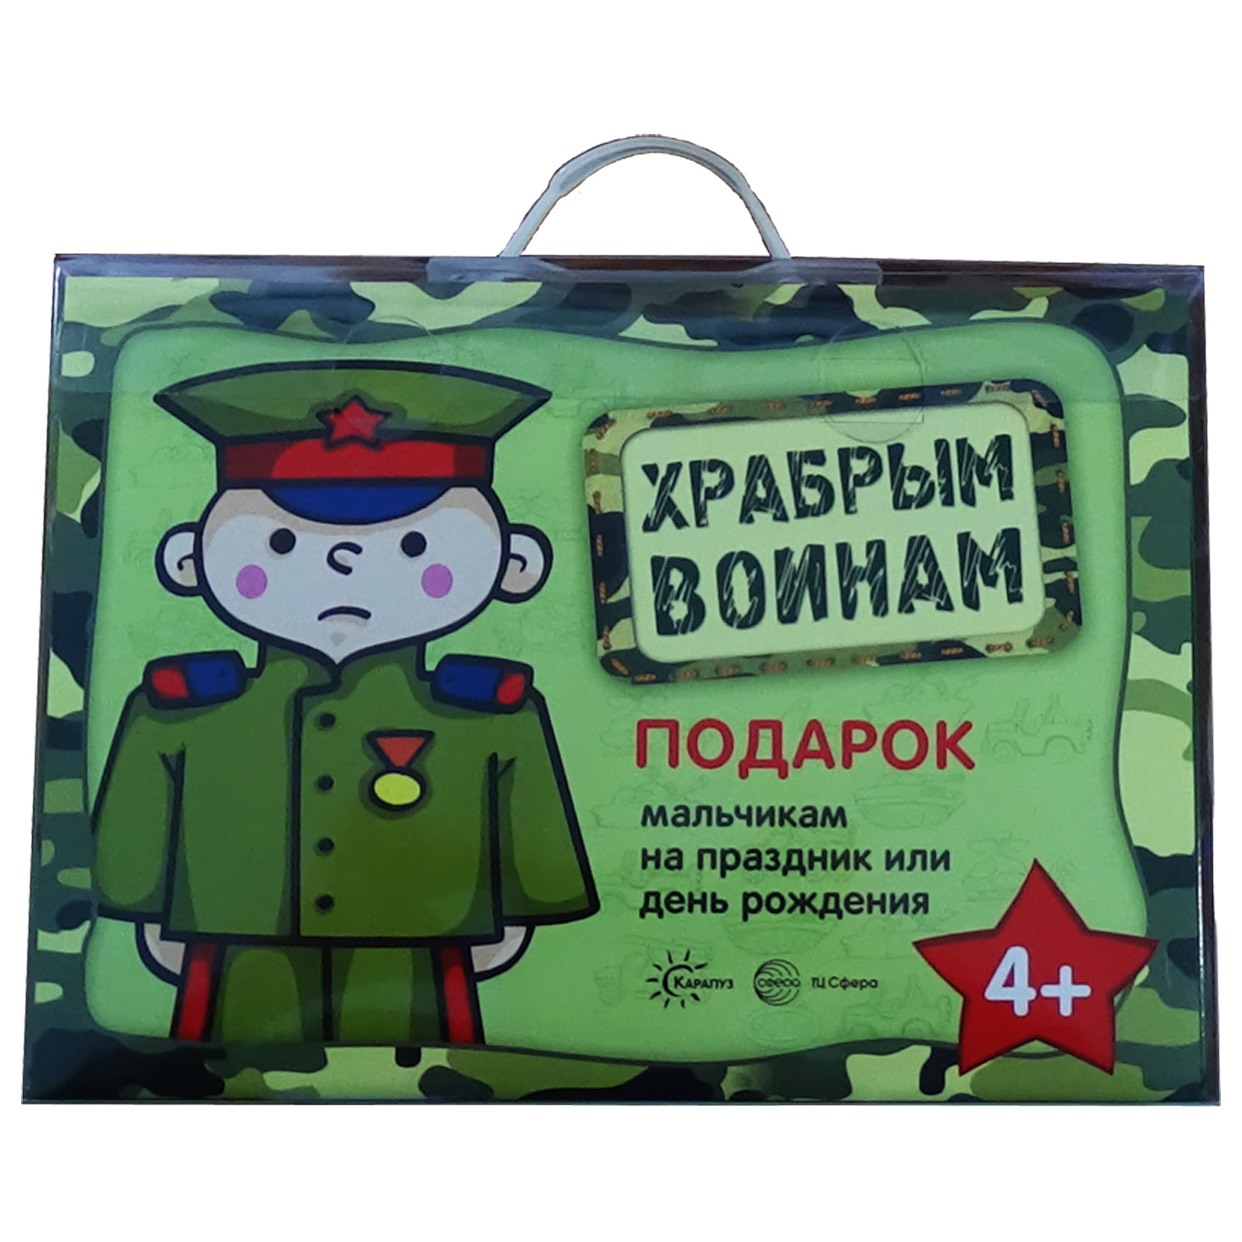 фото Подарочный набор- чемоданчик "храбрым воинам" для мальчиков тц сфера